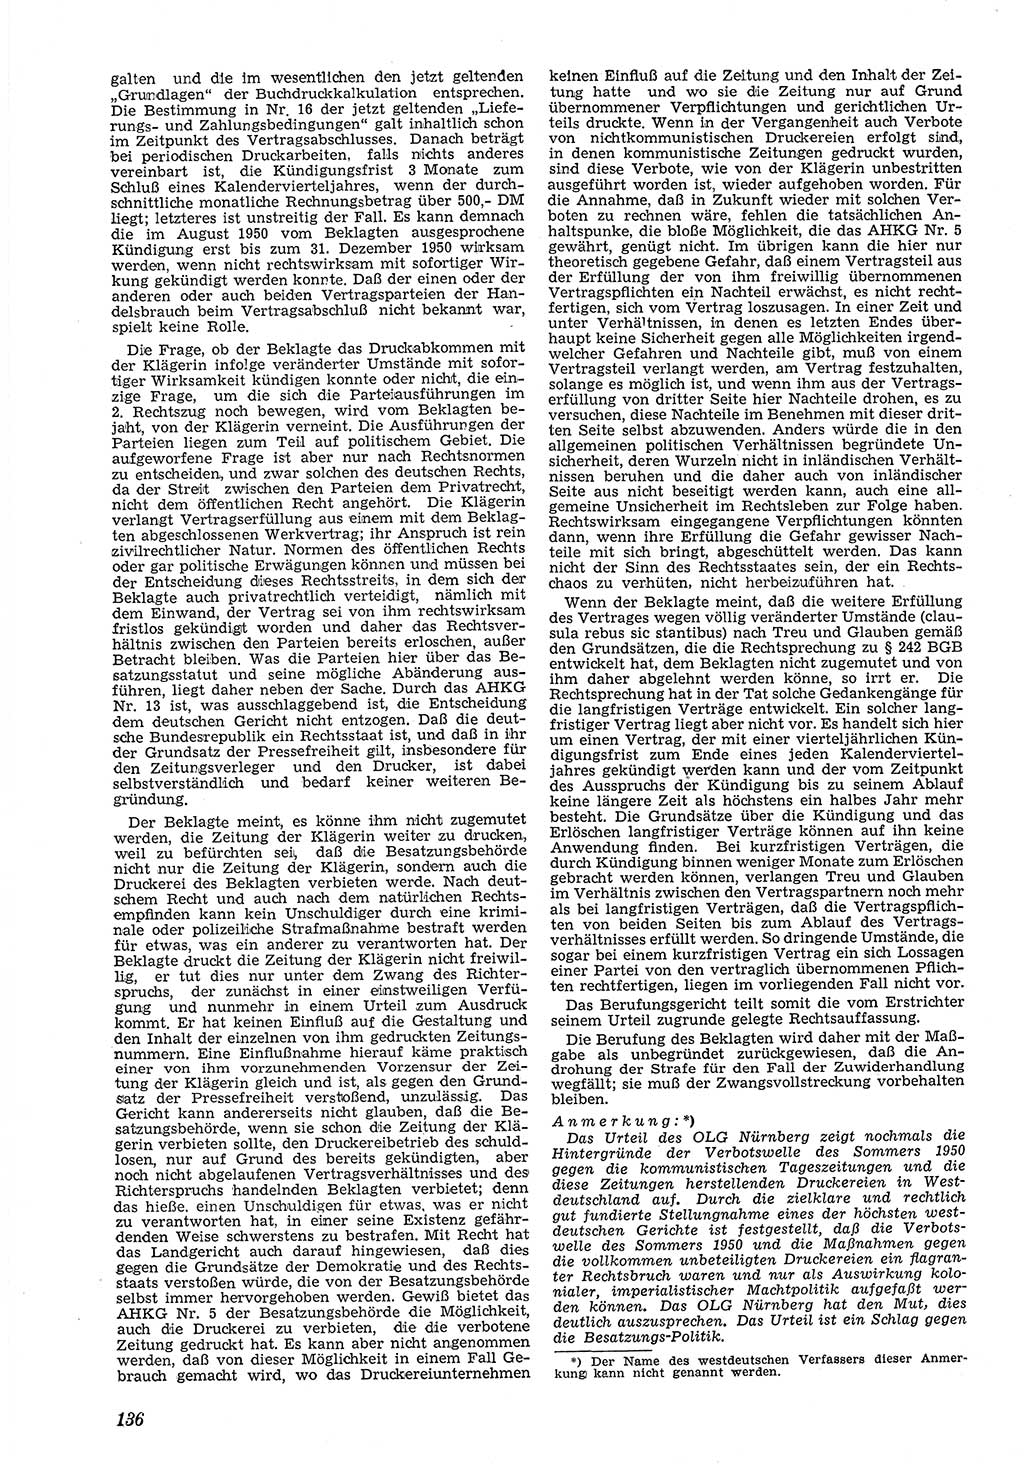 Neue Justiz (NJ), Zeitschrift für Recht und Rechtswissenschaft [Deutsche Demokratische Republik (DDR)], 5. Jahrgang 1951, Seite 136 (NJ DDR 1951, S. 136)